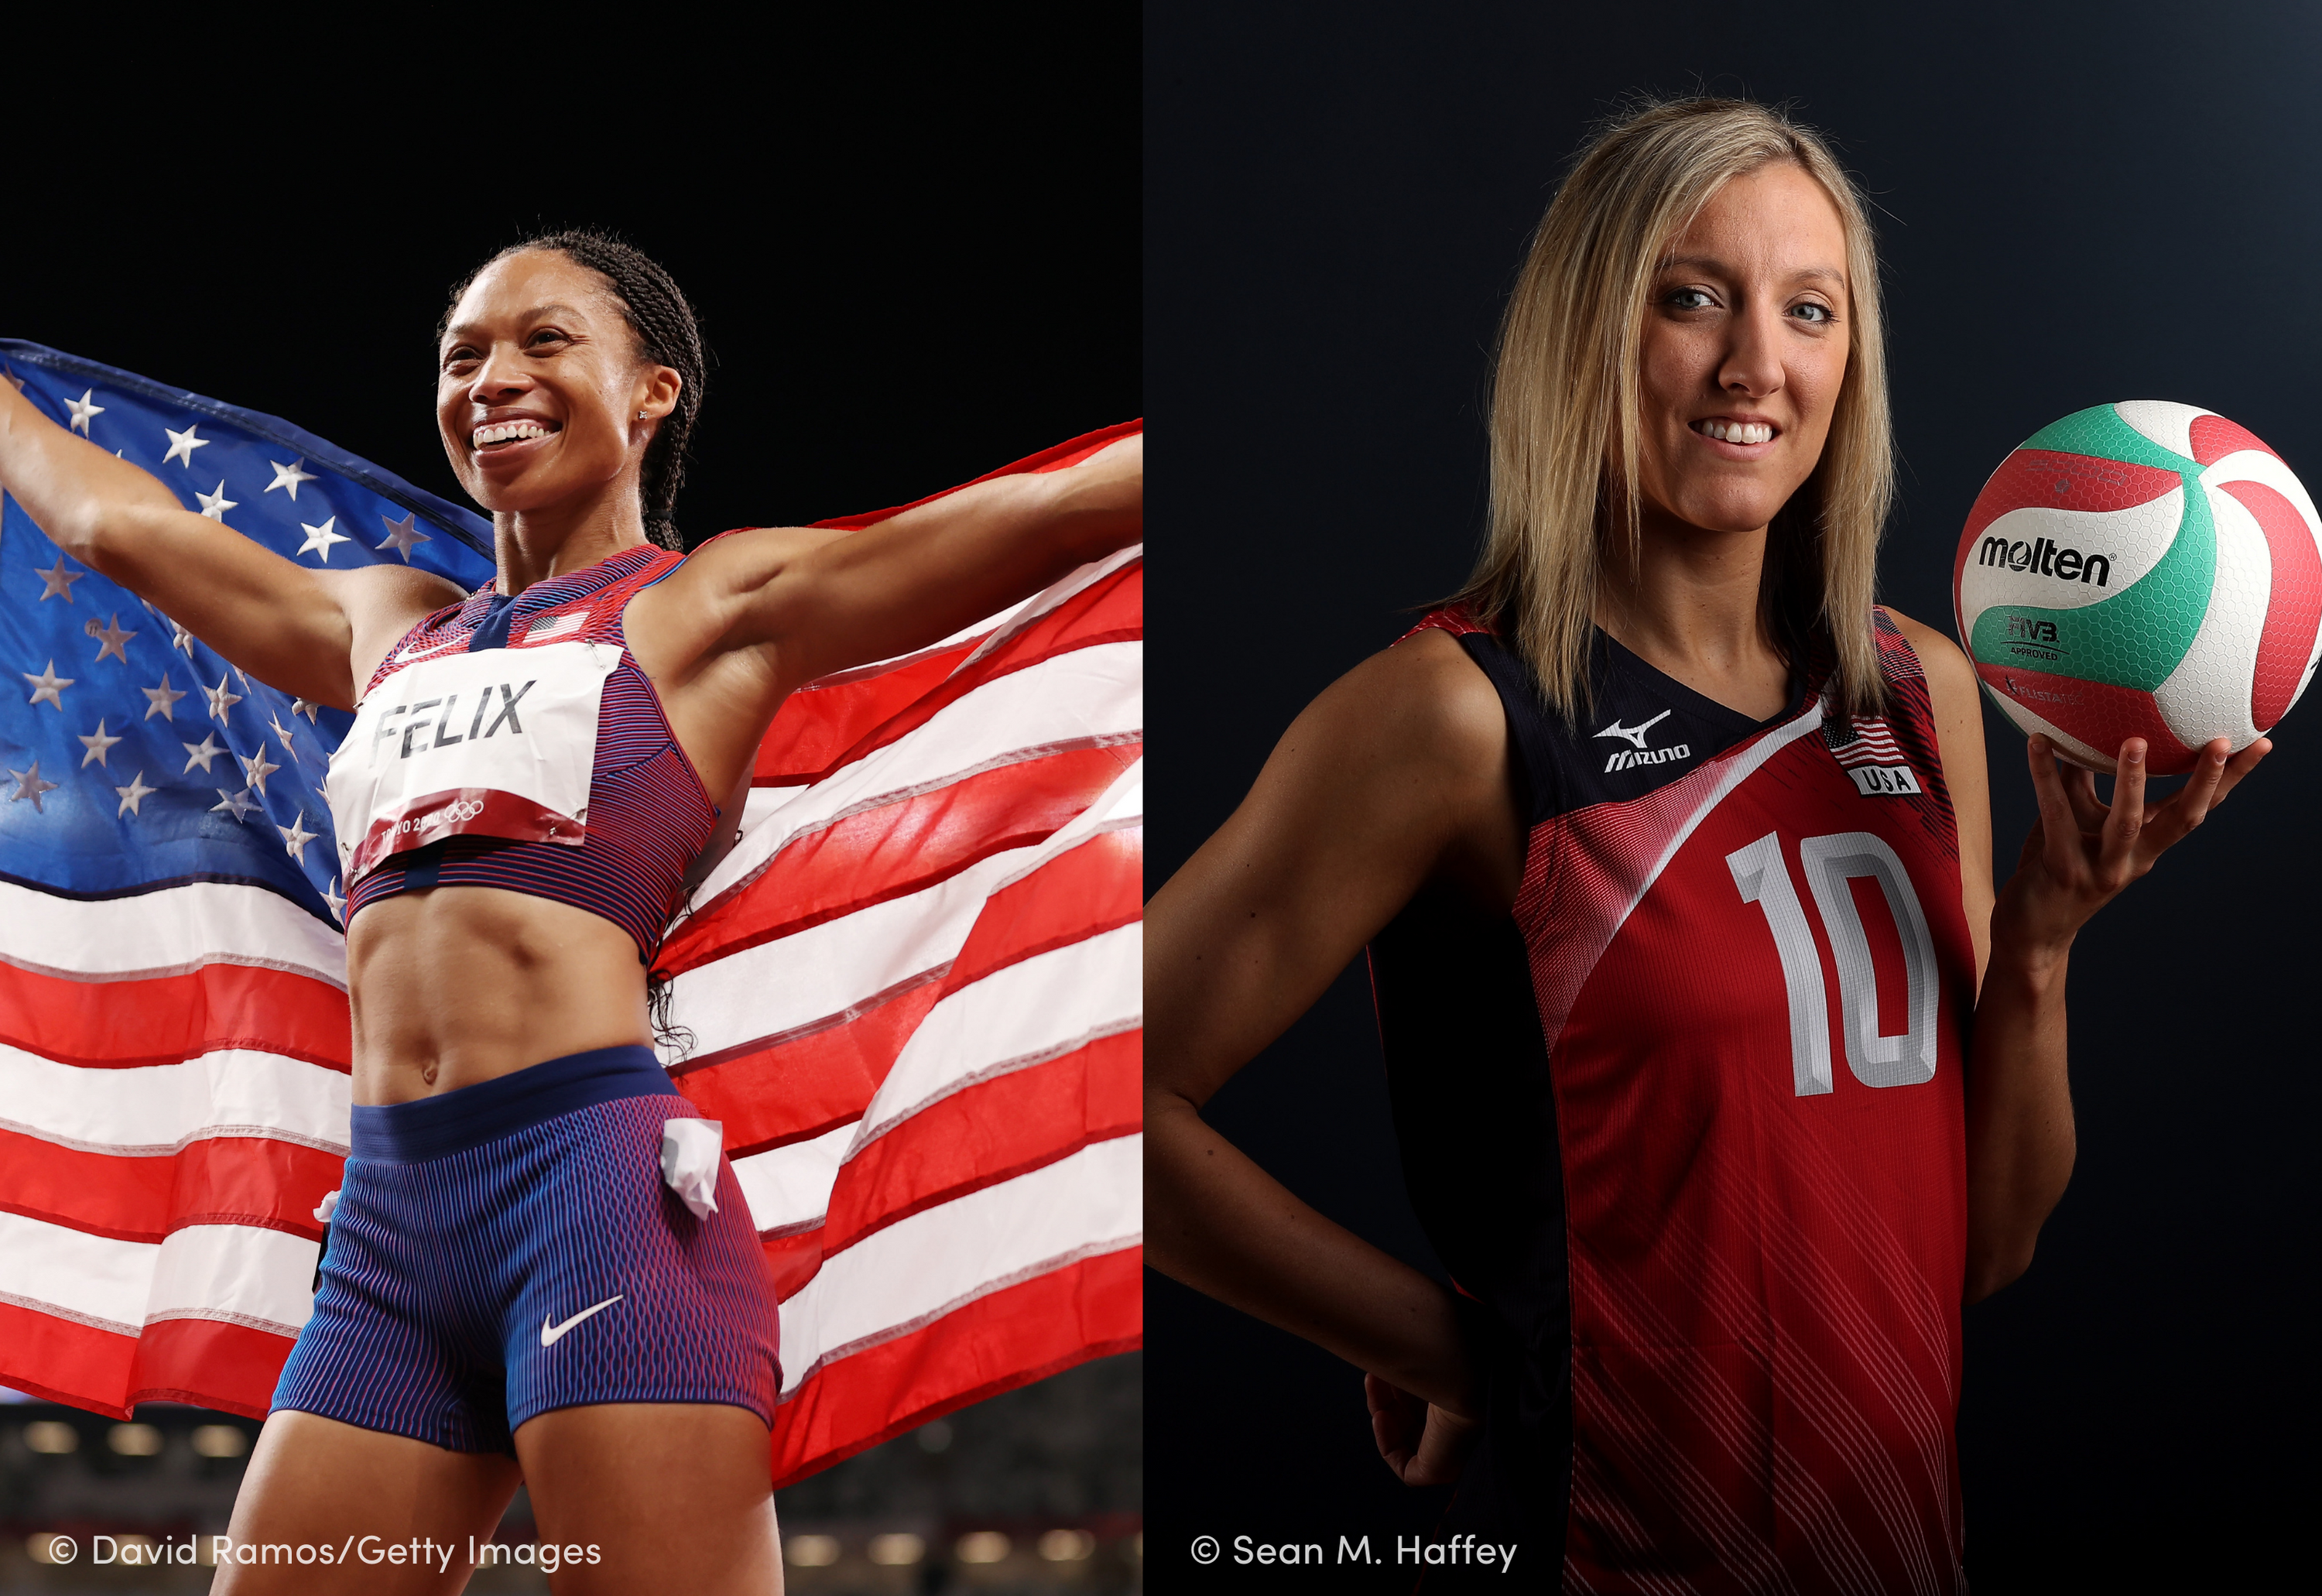 The Women's Sports Foundation Celebrates Inspiring Athletes, Girls